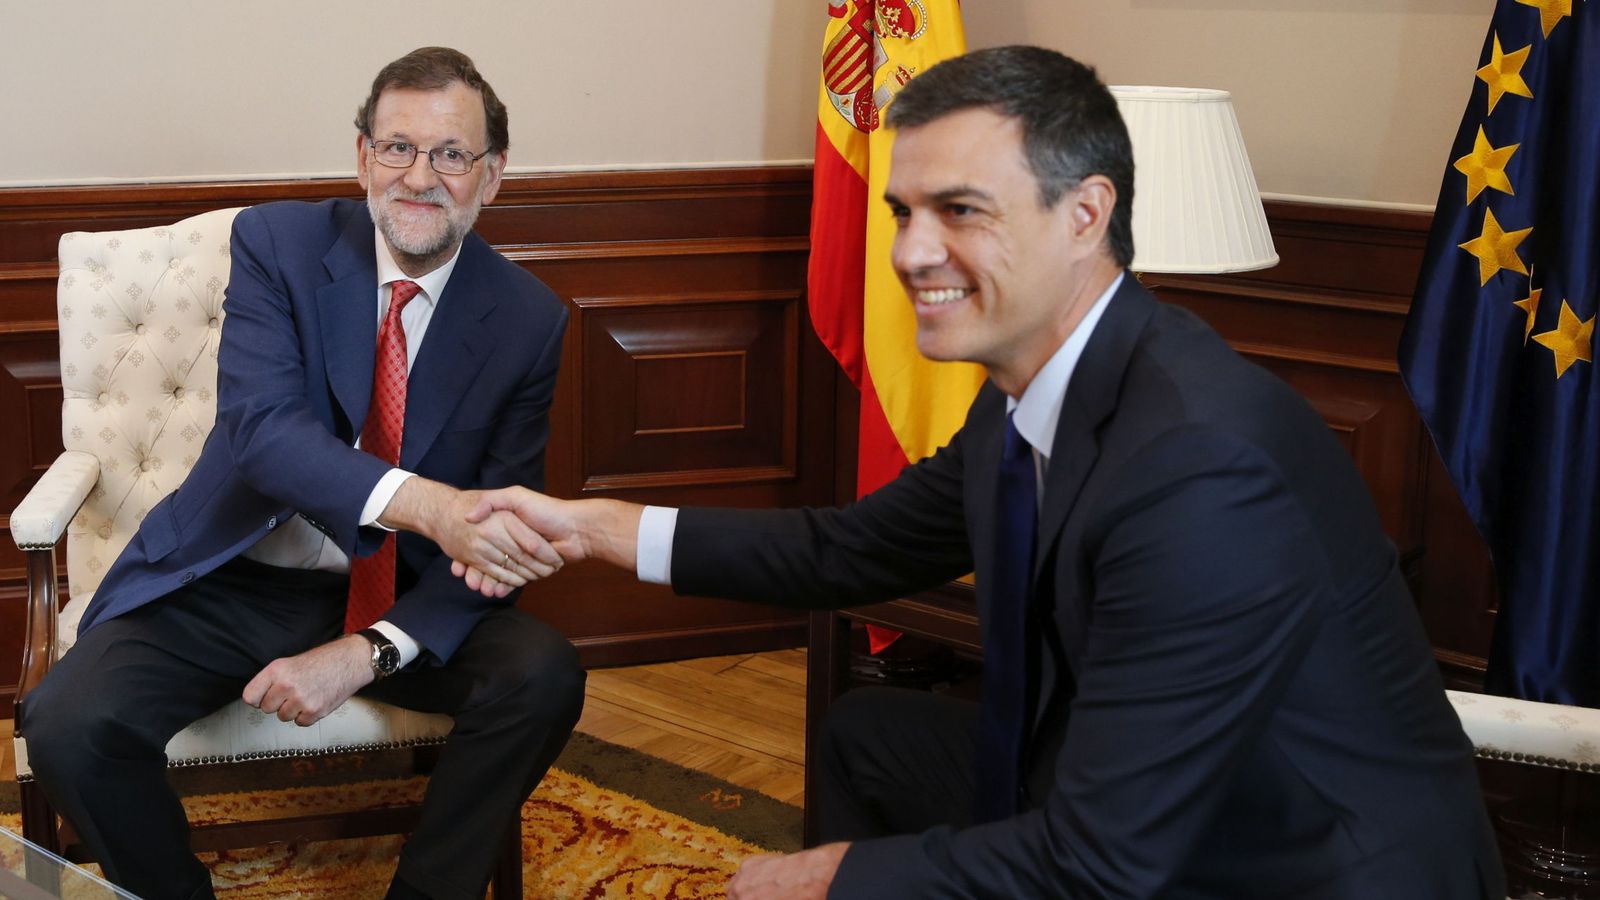 Foto: Mariano Rajoy y Pedro Sánchez se estrechan la mano durante su segunda reunión en el Congreso tras el 26-J, este 2 de agosto. (EFE)